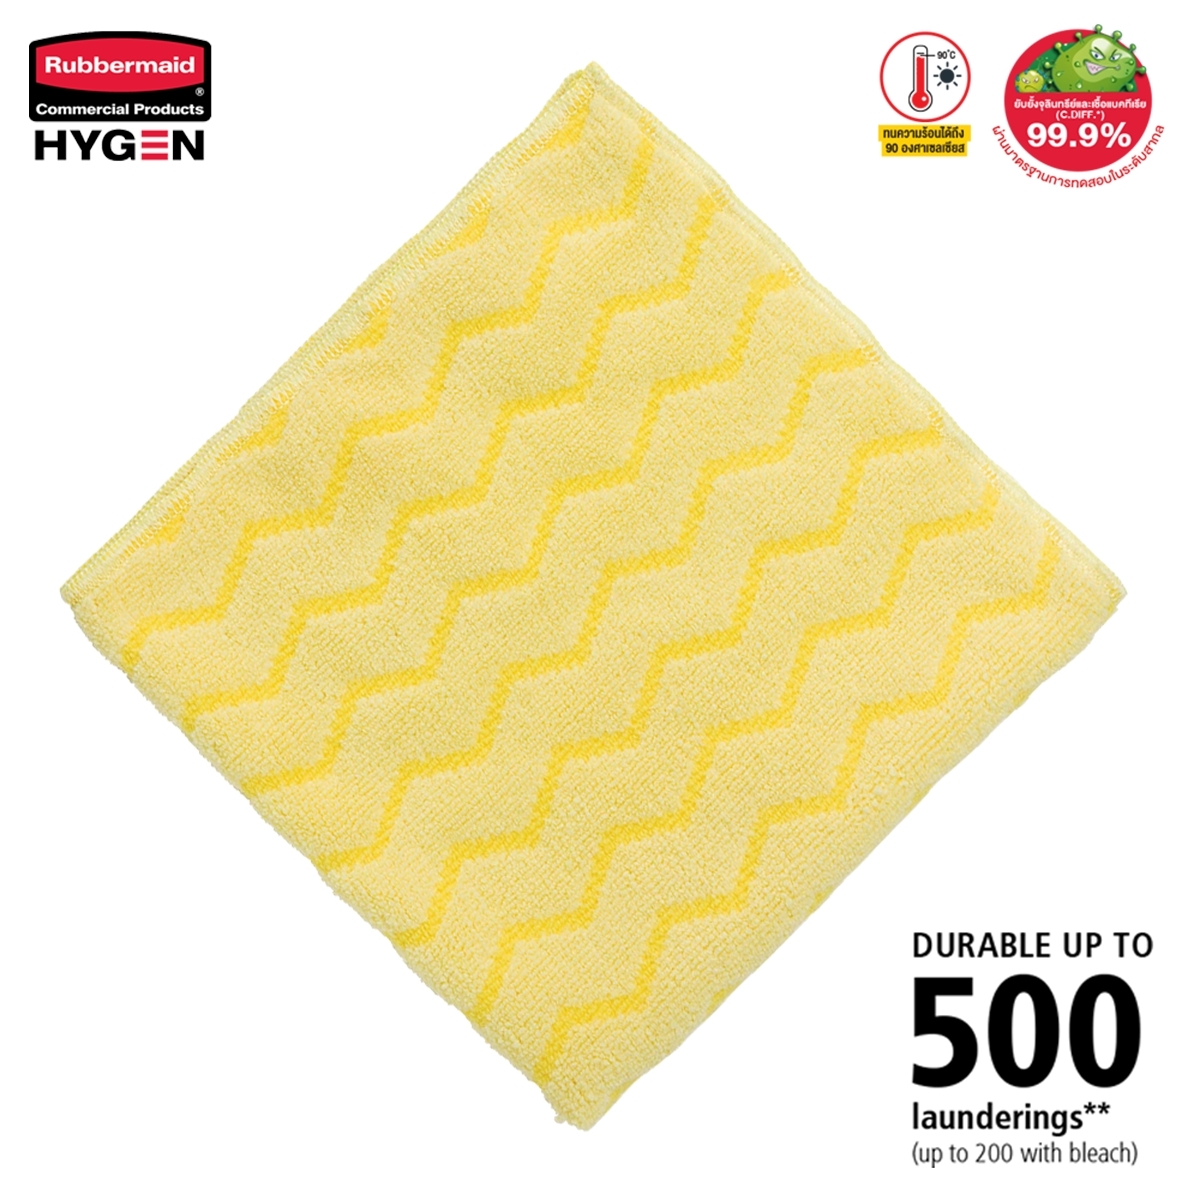 ผ้าไมโครไฟเบอร์ HYGEN™ ขนาด 16 นิ้ว สีเหลือง แบบซิกแซก เกรดพรีเมี่ยม ซักน้ำร้อน และเข้าเครื่องอบได้ถึง 92°C